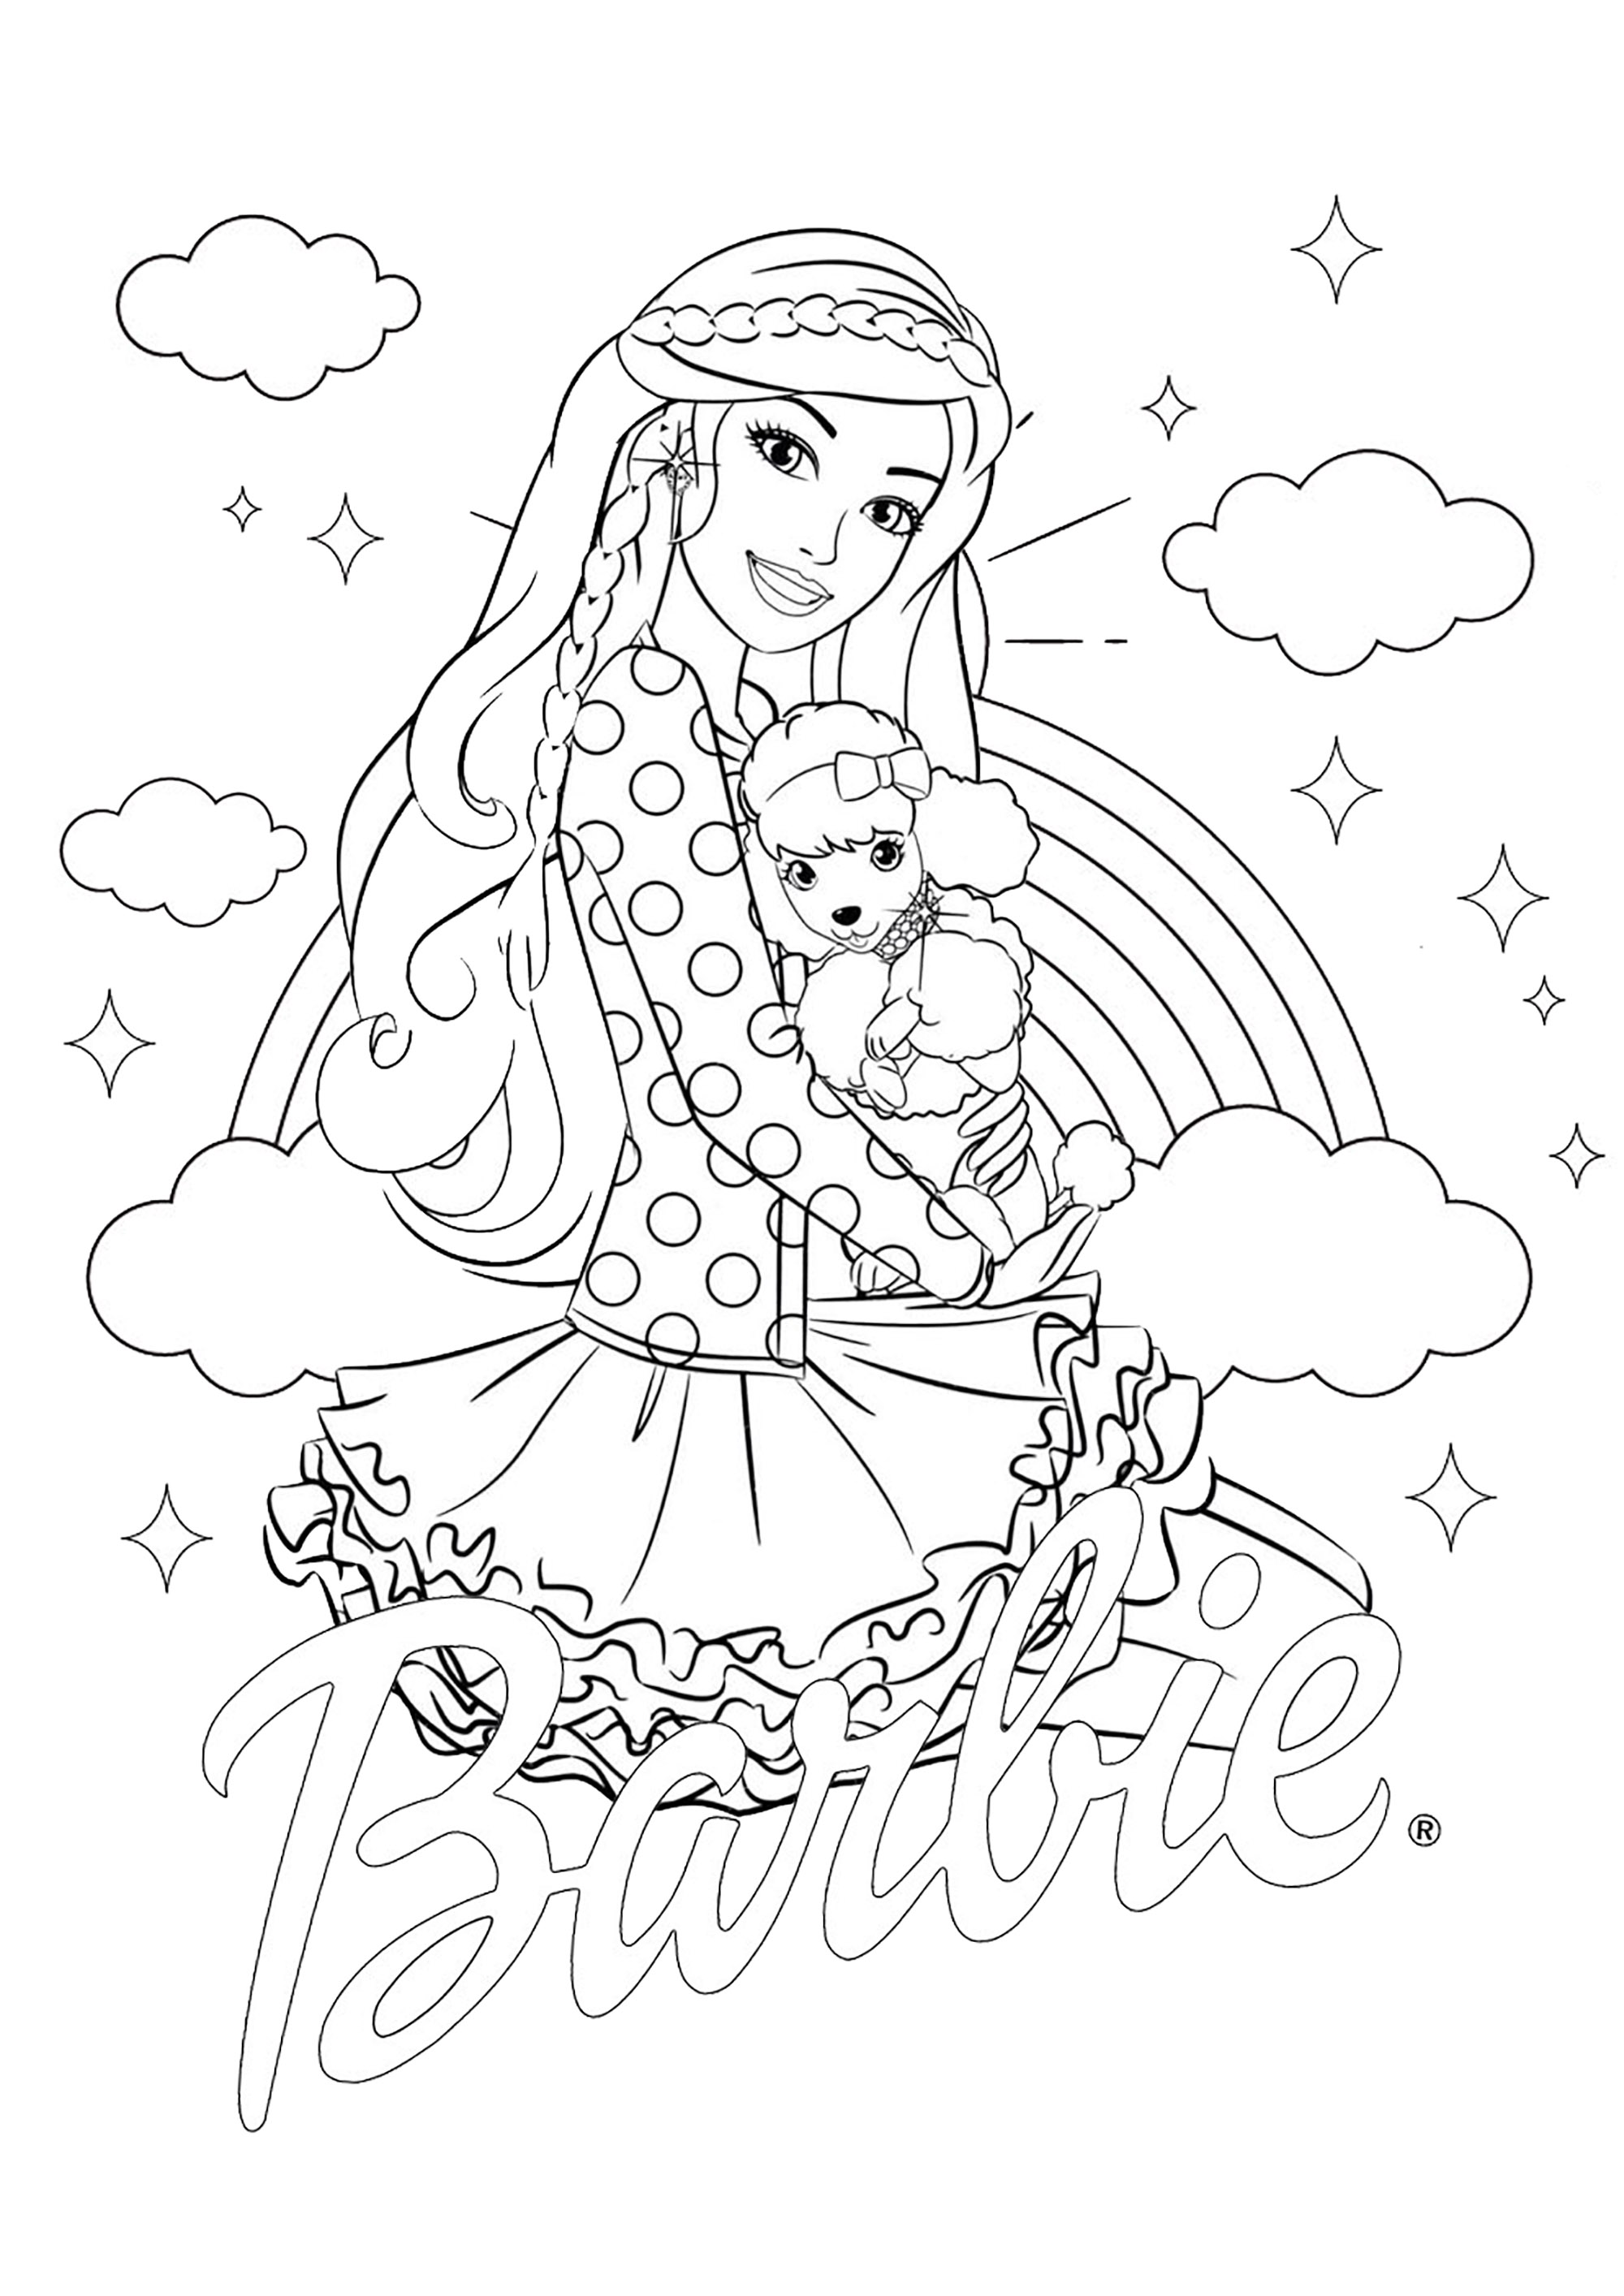 Barbie et son chien. Jolie coloriage de la belle Barbie et de son petit chien, avec le logo Barbie et un fond composé d'un bel arc-en-ciel et de jolis nuages, pour ajouter un peu de complexité.